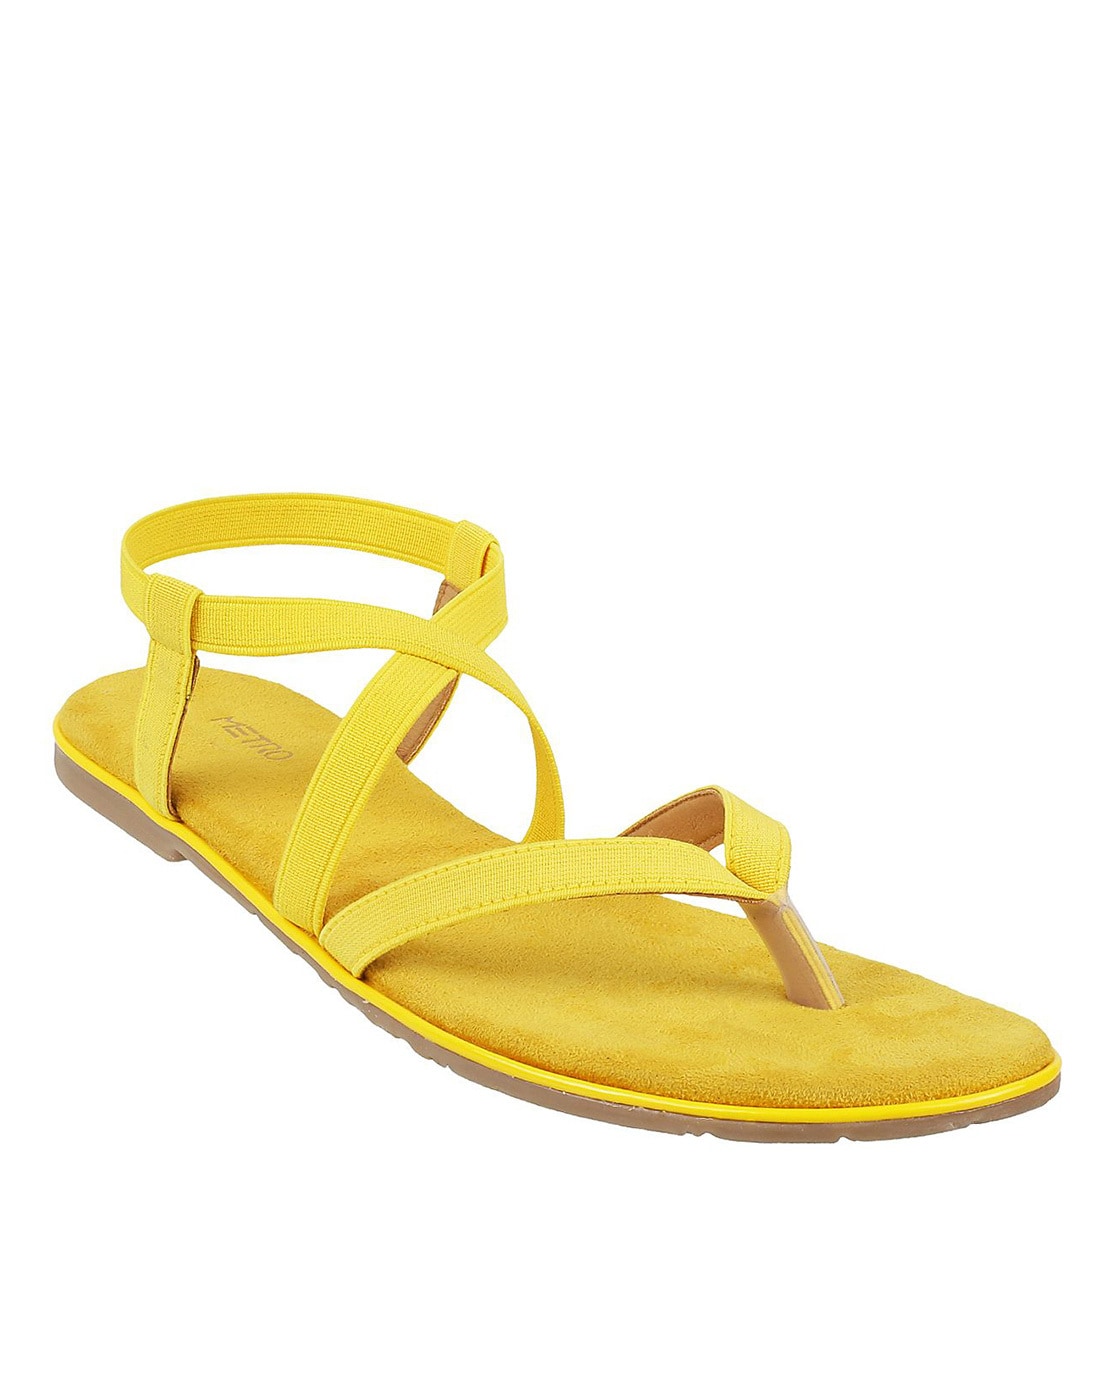 Buy Women Yellow Casual Heels Online - 790854 | Allen Solly